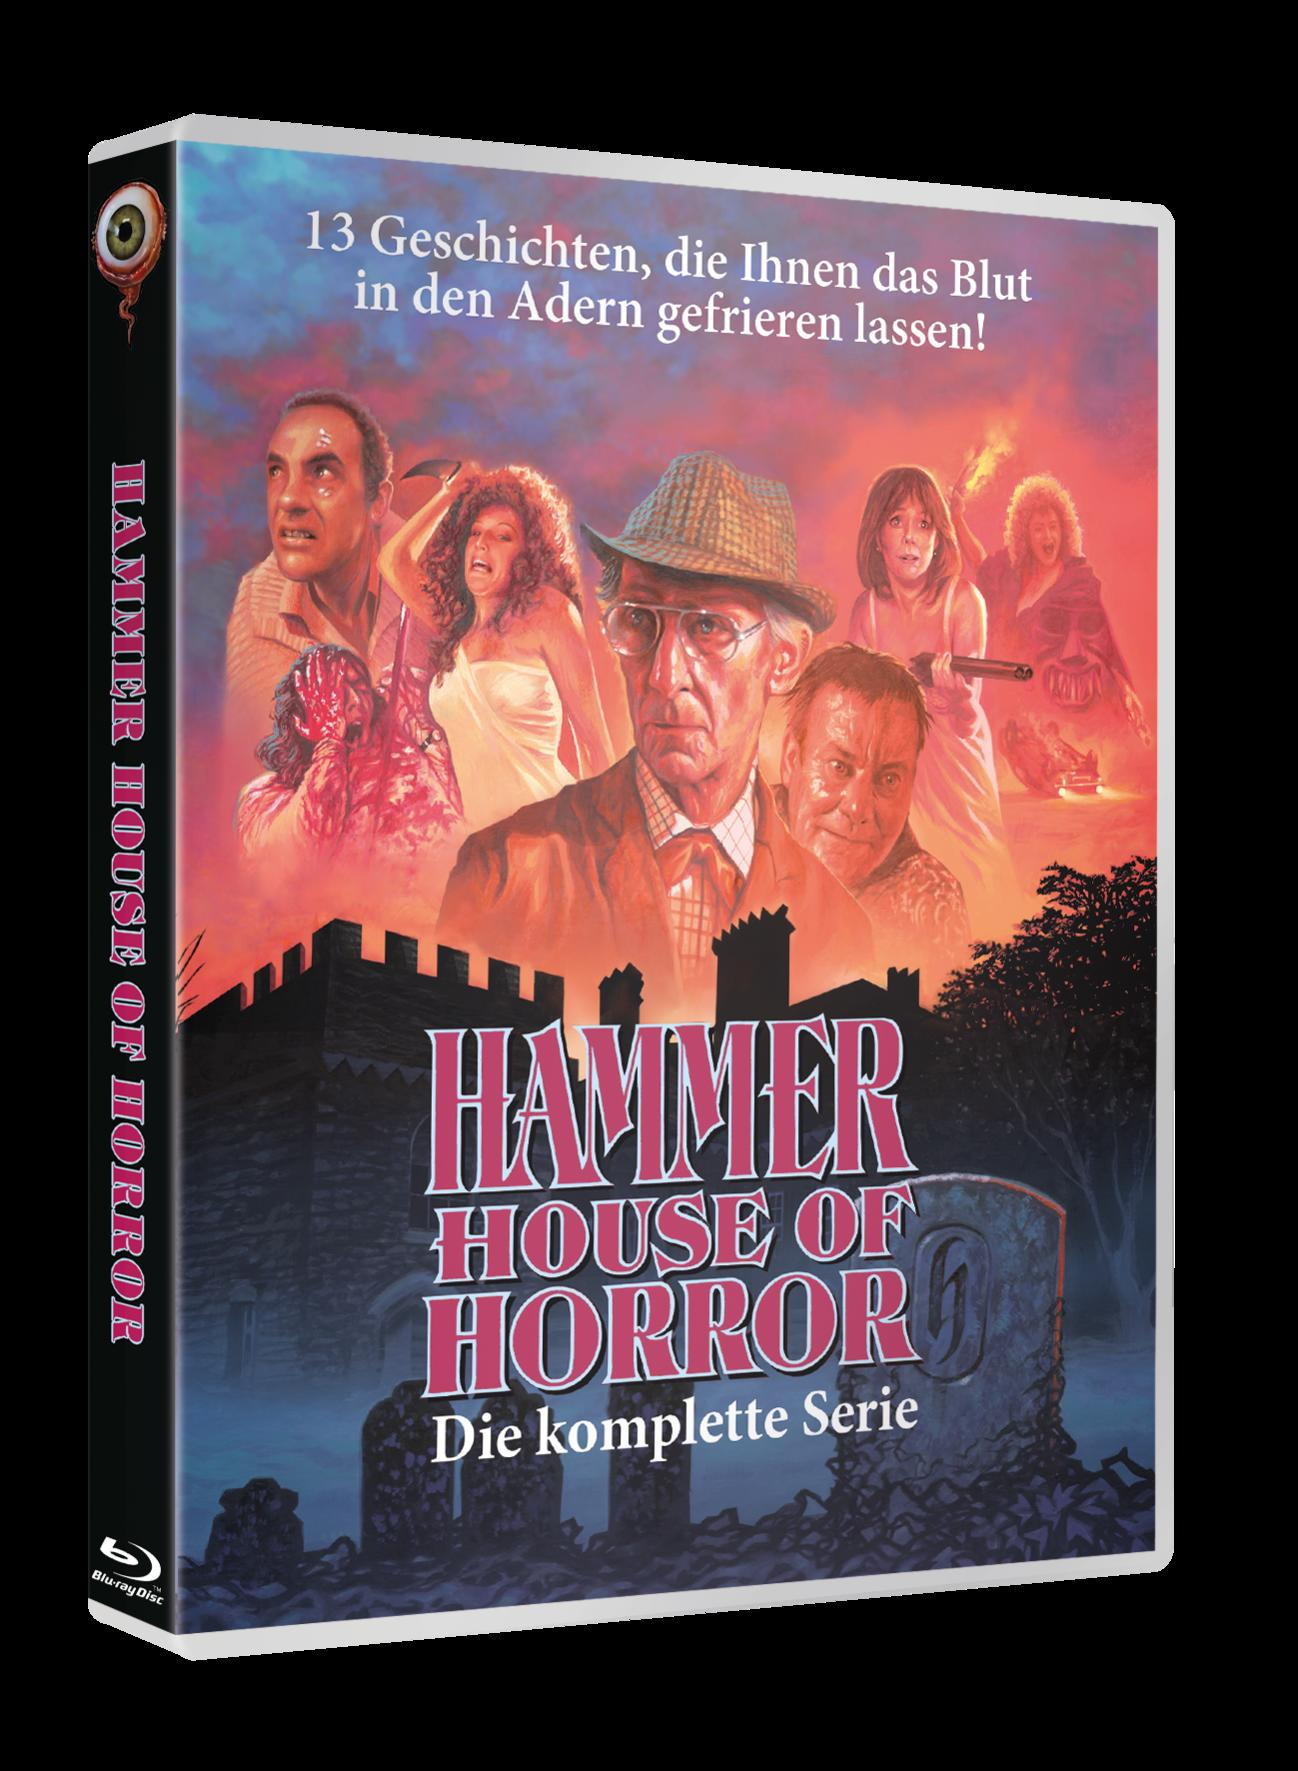 Hammer House of Horror Blu-ray komplett